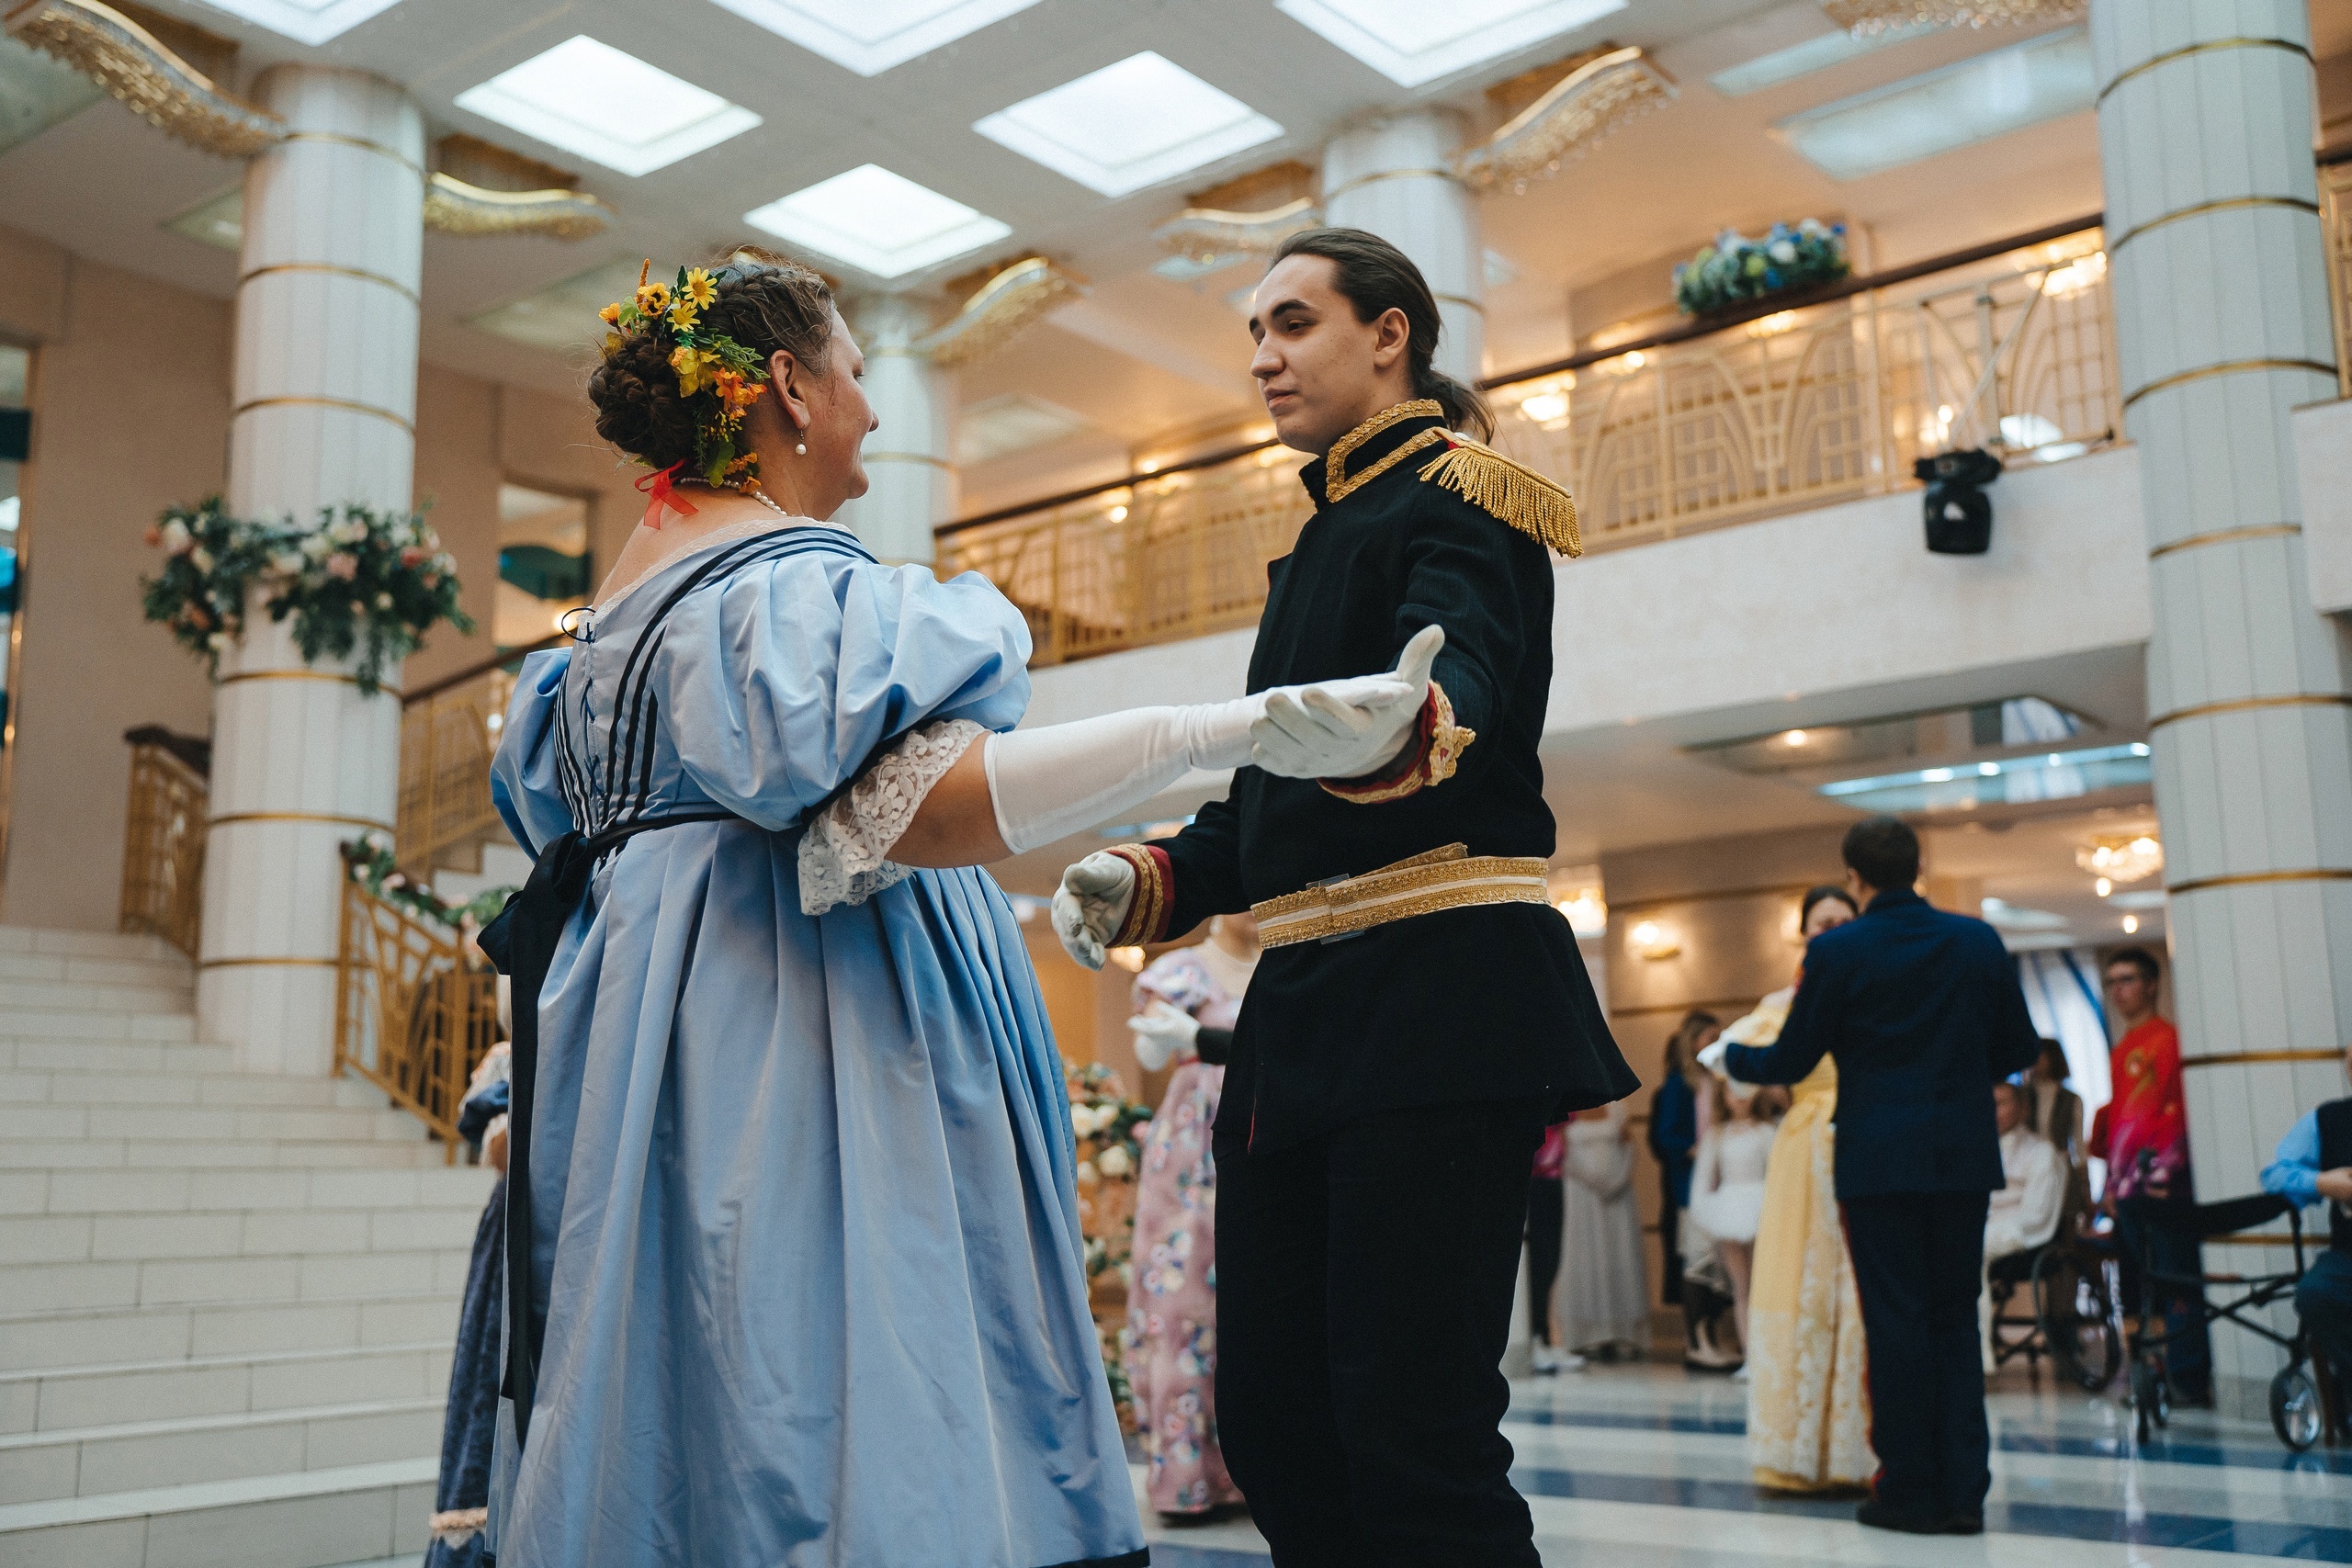 Горящие глаза, улыбки и яркие костюмы: как в Кемерове прошёл инклюзивный показ бальной моды «Вальс цветов»